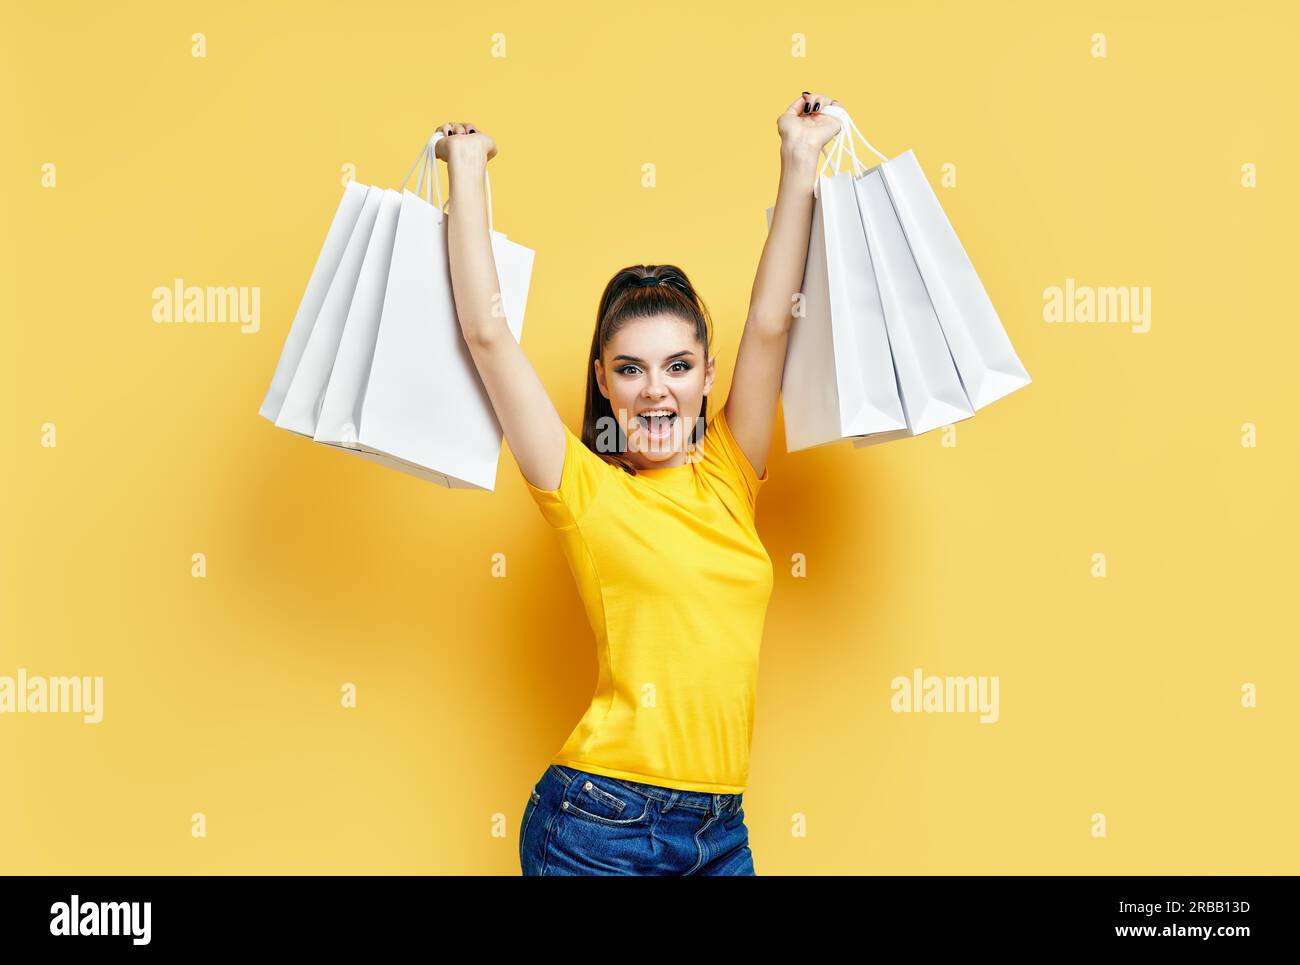 Glücklich aufgeregt shopaholic Frau mit Einkaufstaschen in den Händen genießen Ihr Einkauf auf gelbem Hintergrund Stockfoto